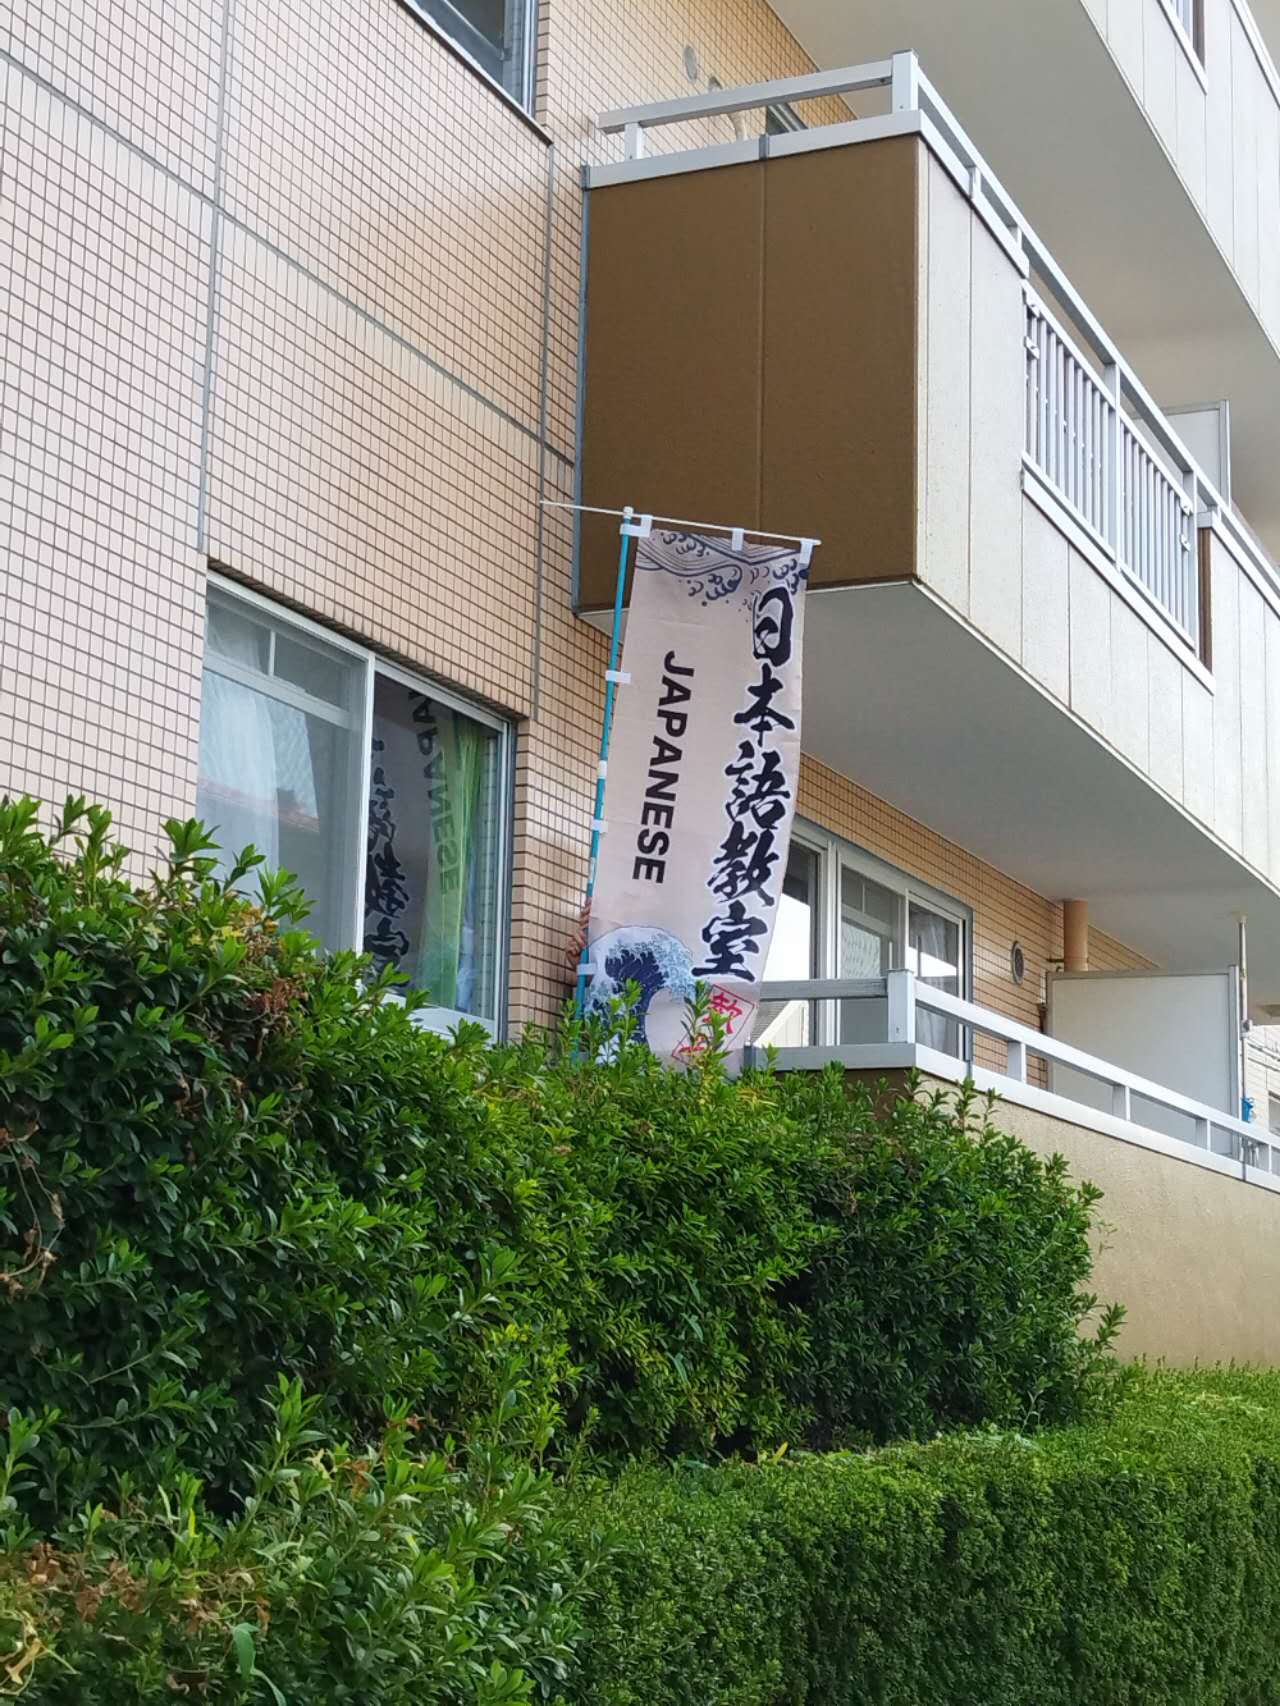 「日本語教室」の　のぼりを揚げるようになりました。ド派手な模様で、ちゃんと見てくれるかな？皆さんはこののぼり旗をみえたら、ぜひ遊びに来てくださいね！